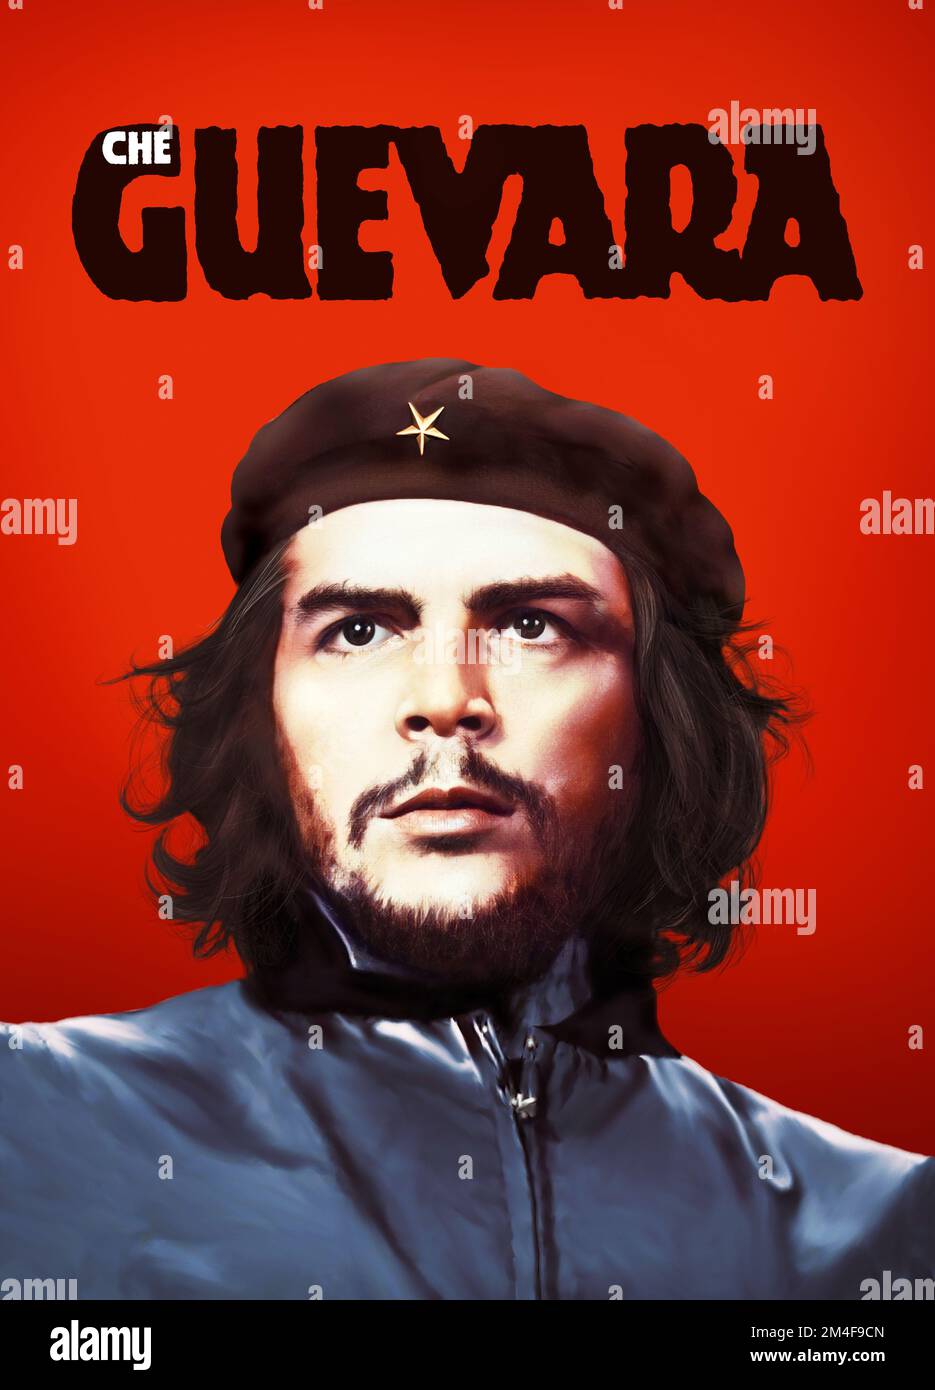 Il marxista comunista cubano Ernesto che Guevara ha realizzato in digitale un'illustrazione di alta qualità con il classico poster vintage rosso Beret Hat Guerrilla Citizen Foto Stock